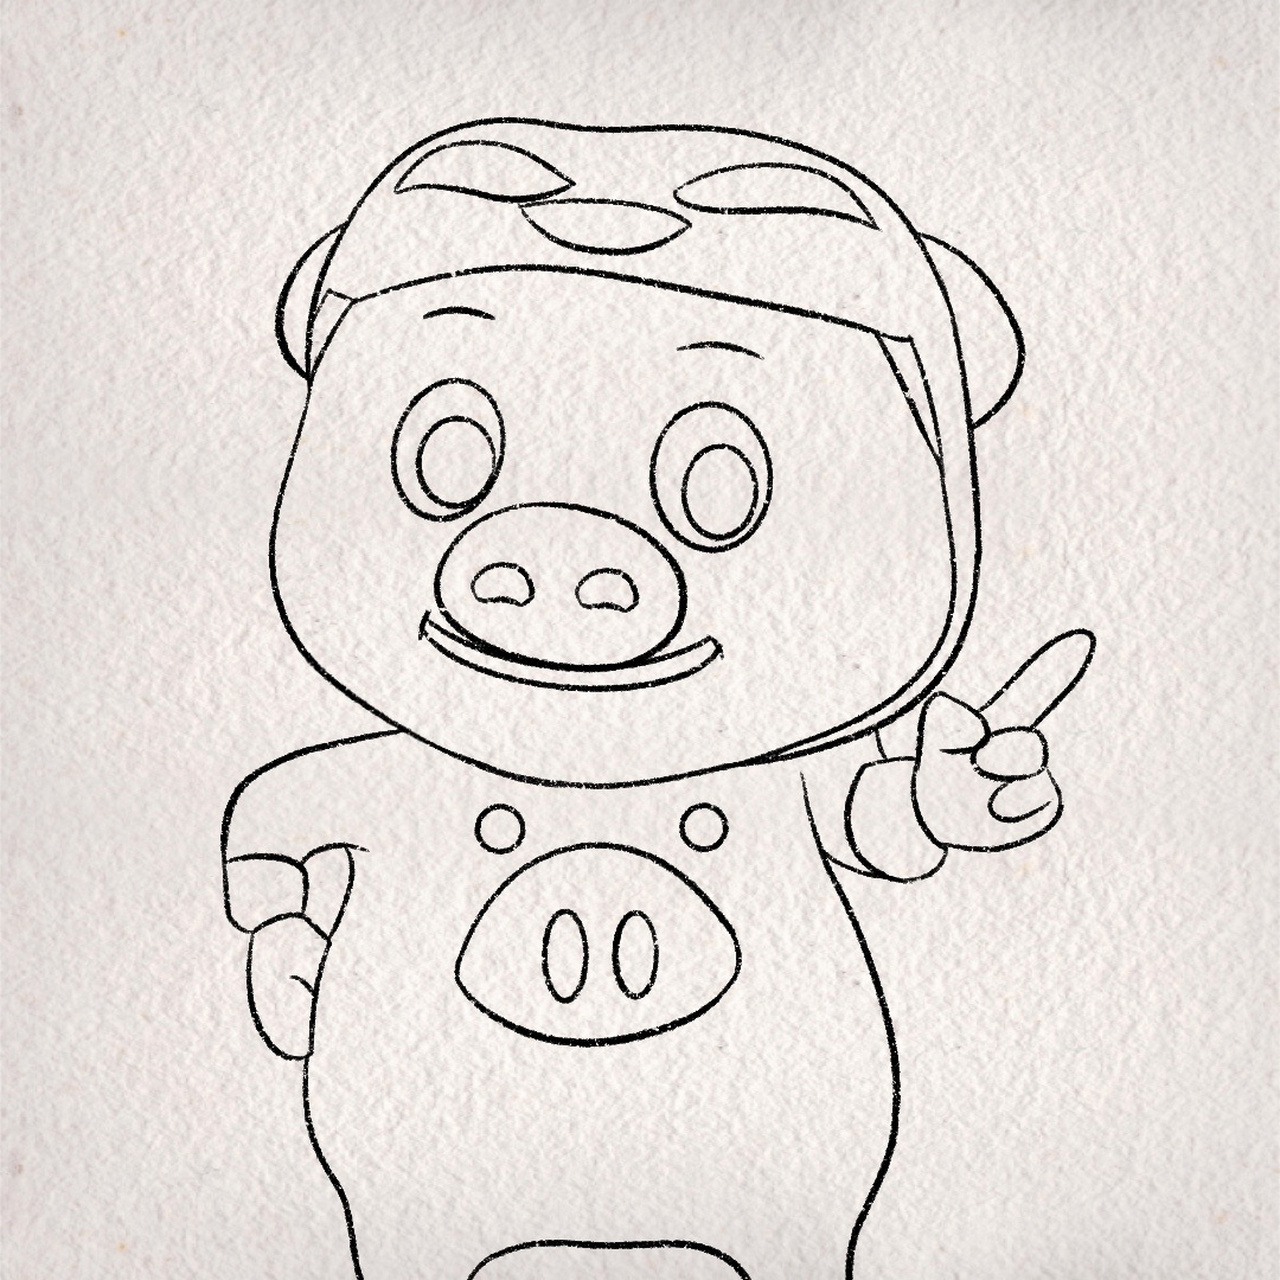 猪猪侠儿童画简笔画图片